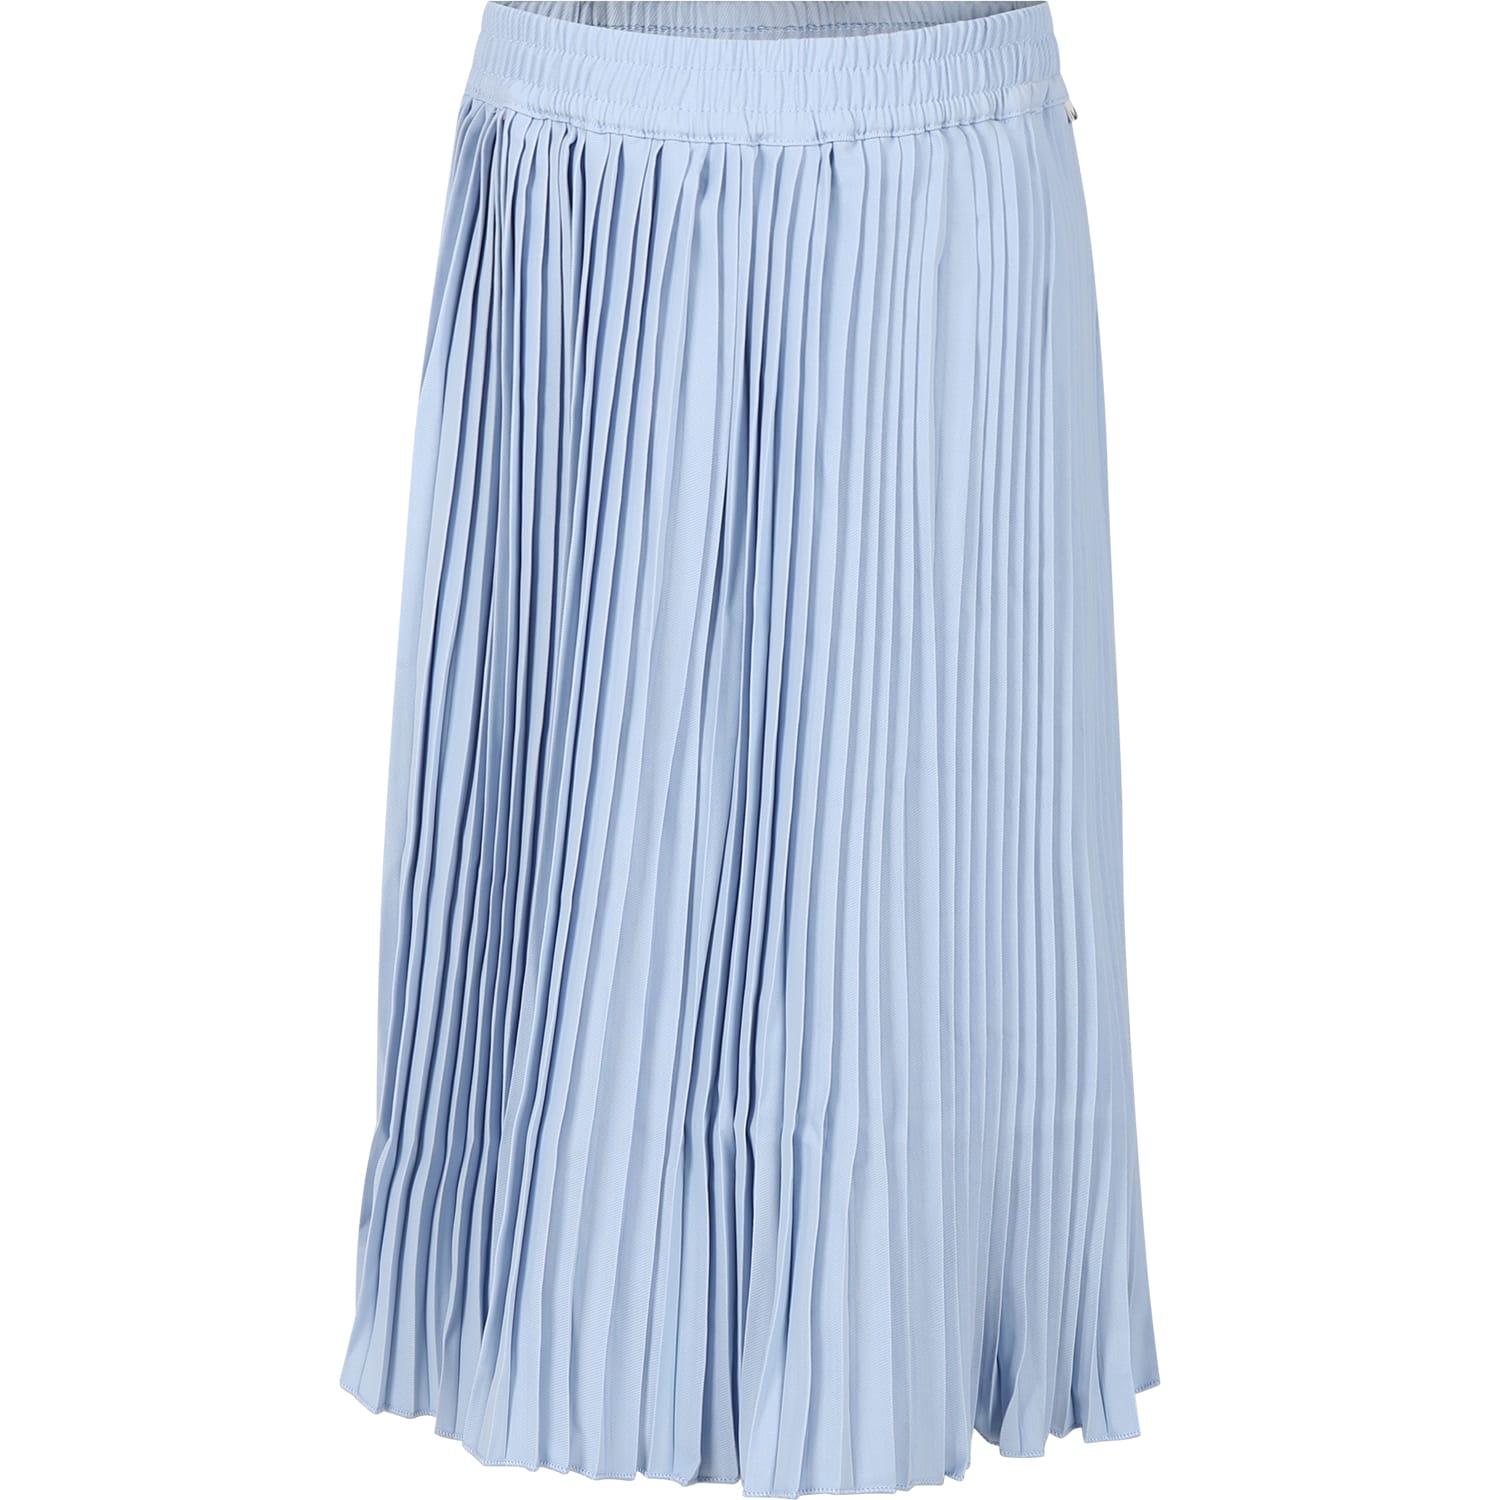 Molo Kids' Light Blue Casual Skirt Backa For Girl